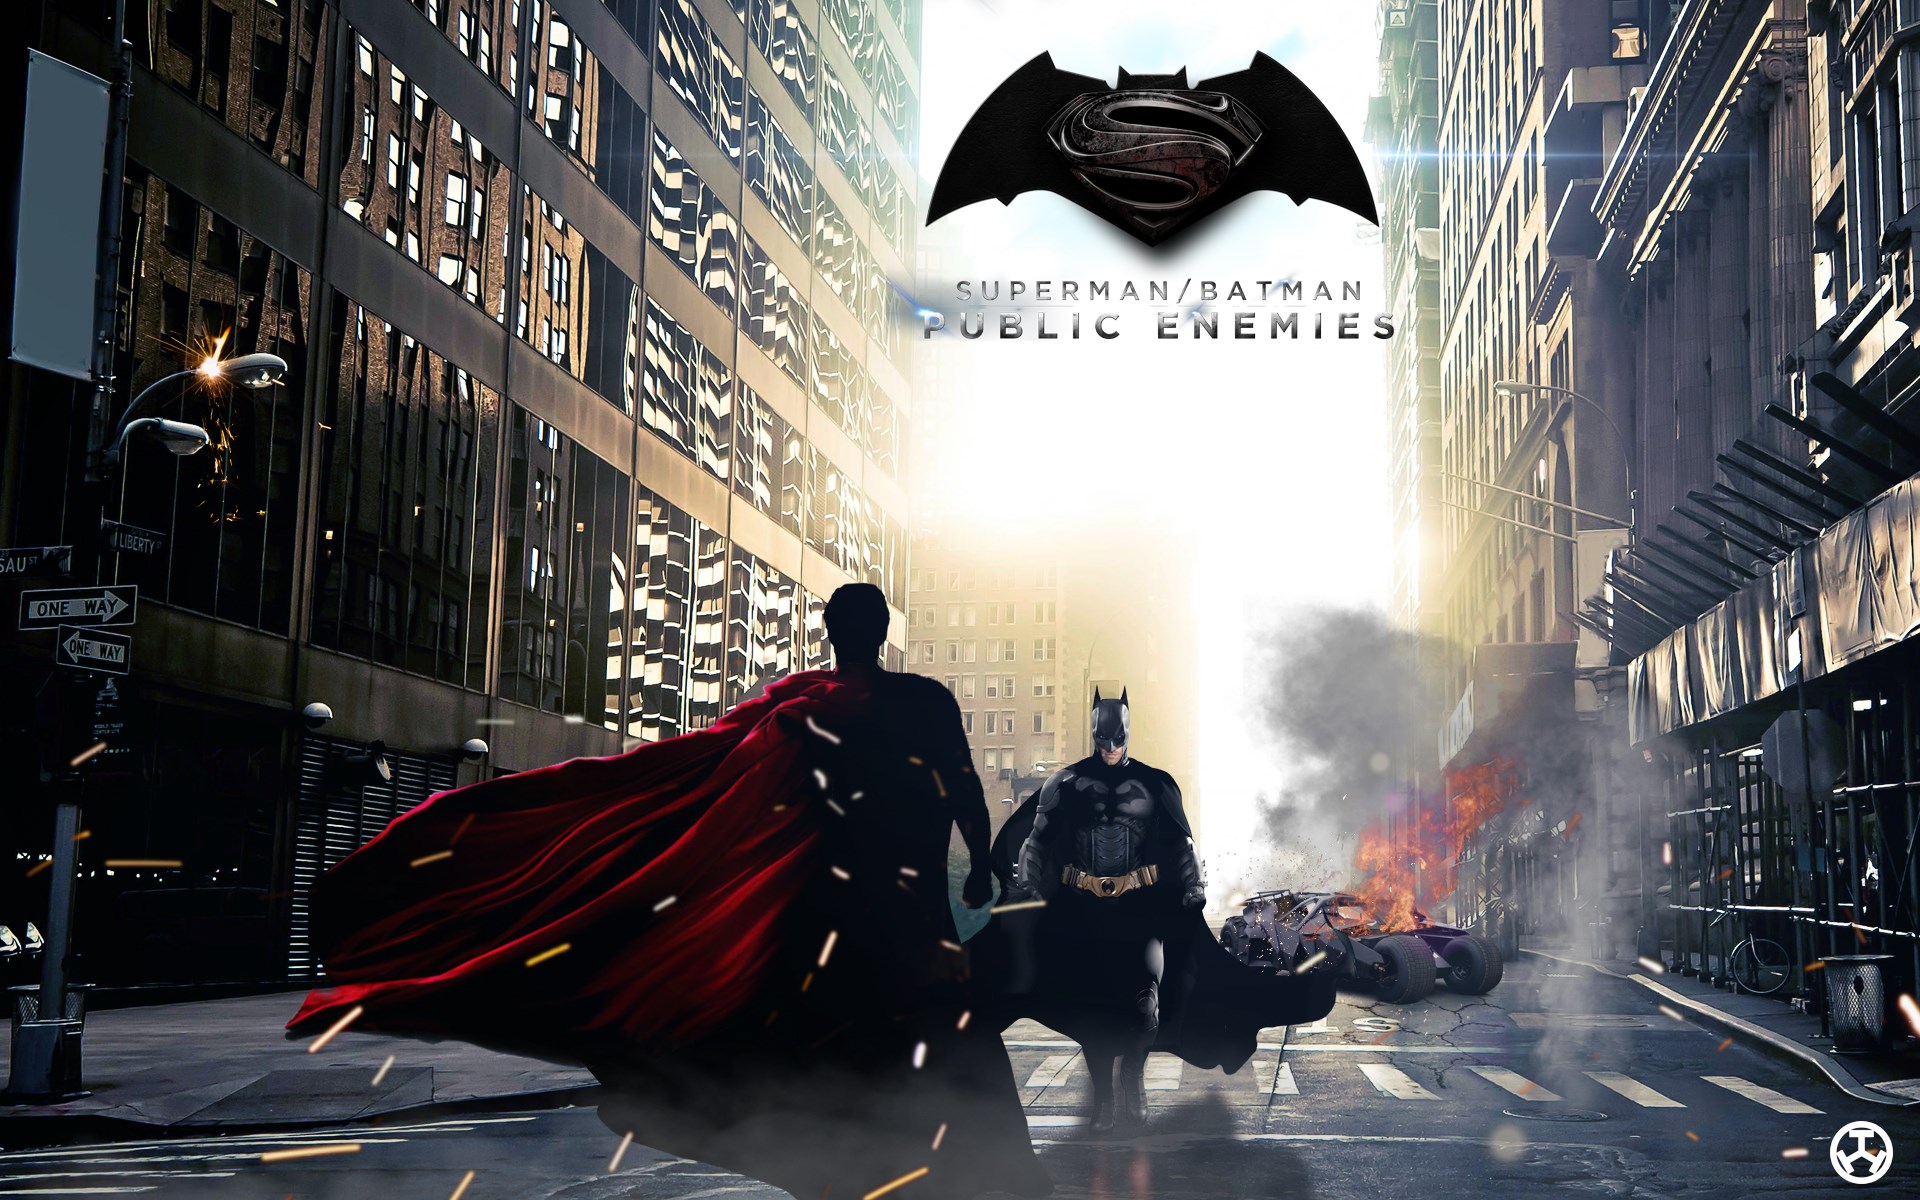 49+] Batman vs Superman 1080p Wallpapers - WallpaperSafari